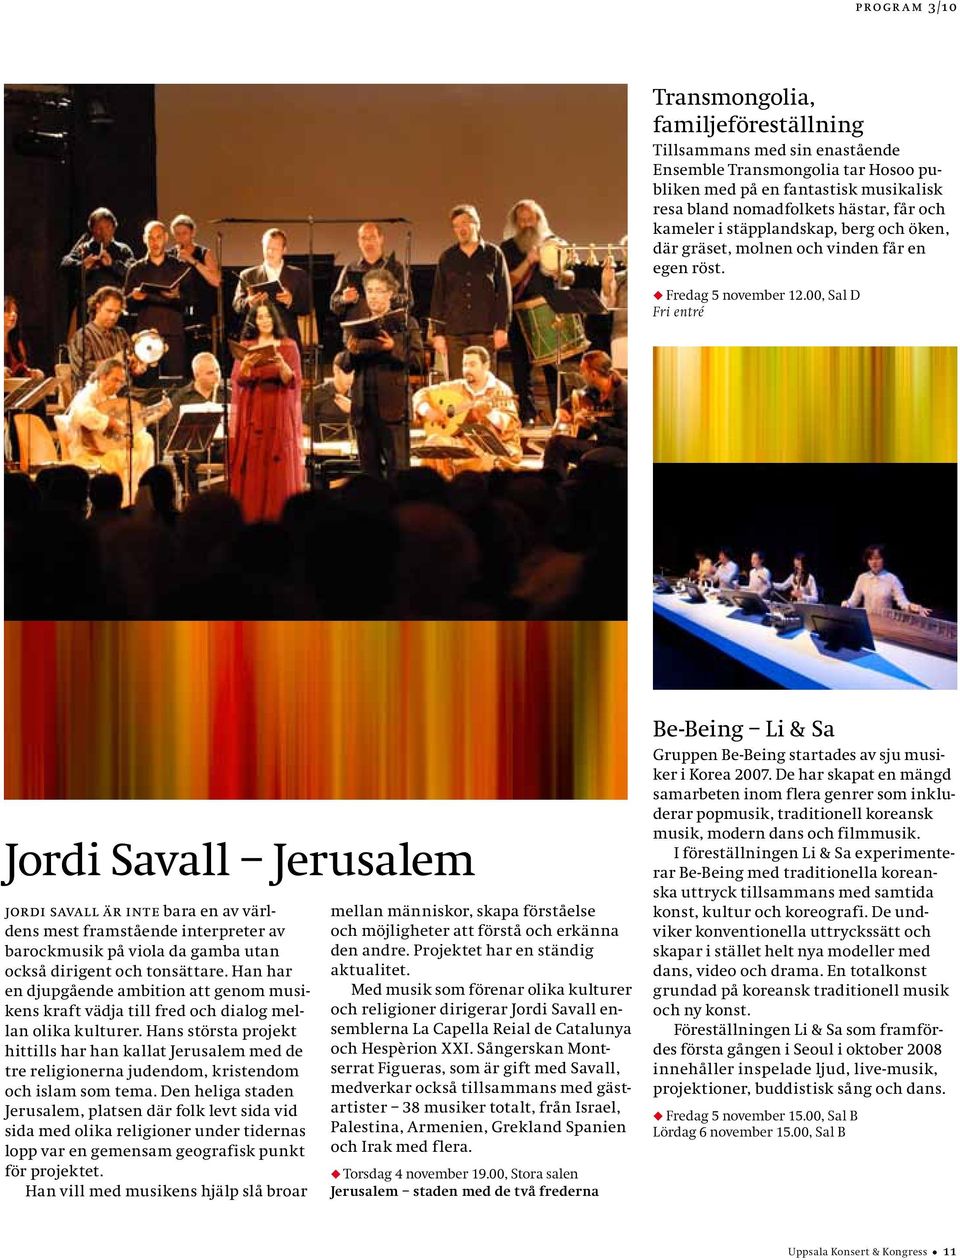 00, Sal D Fri entré Jordi Savall Jerusalem jordi savall är inte bara en av världens mest framstående interpreter av barockmusik på viola da gamba utan också dirigent och tonsättare.